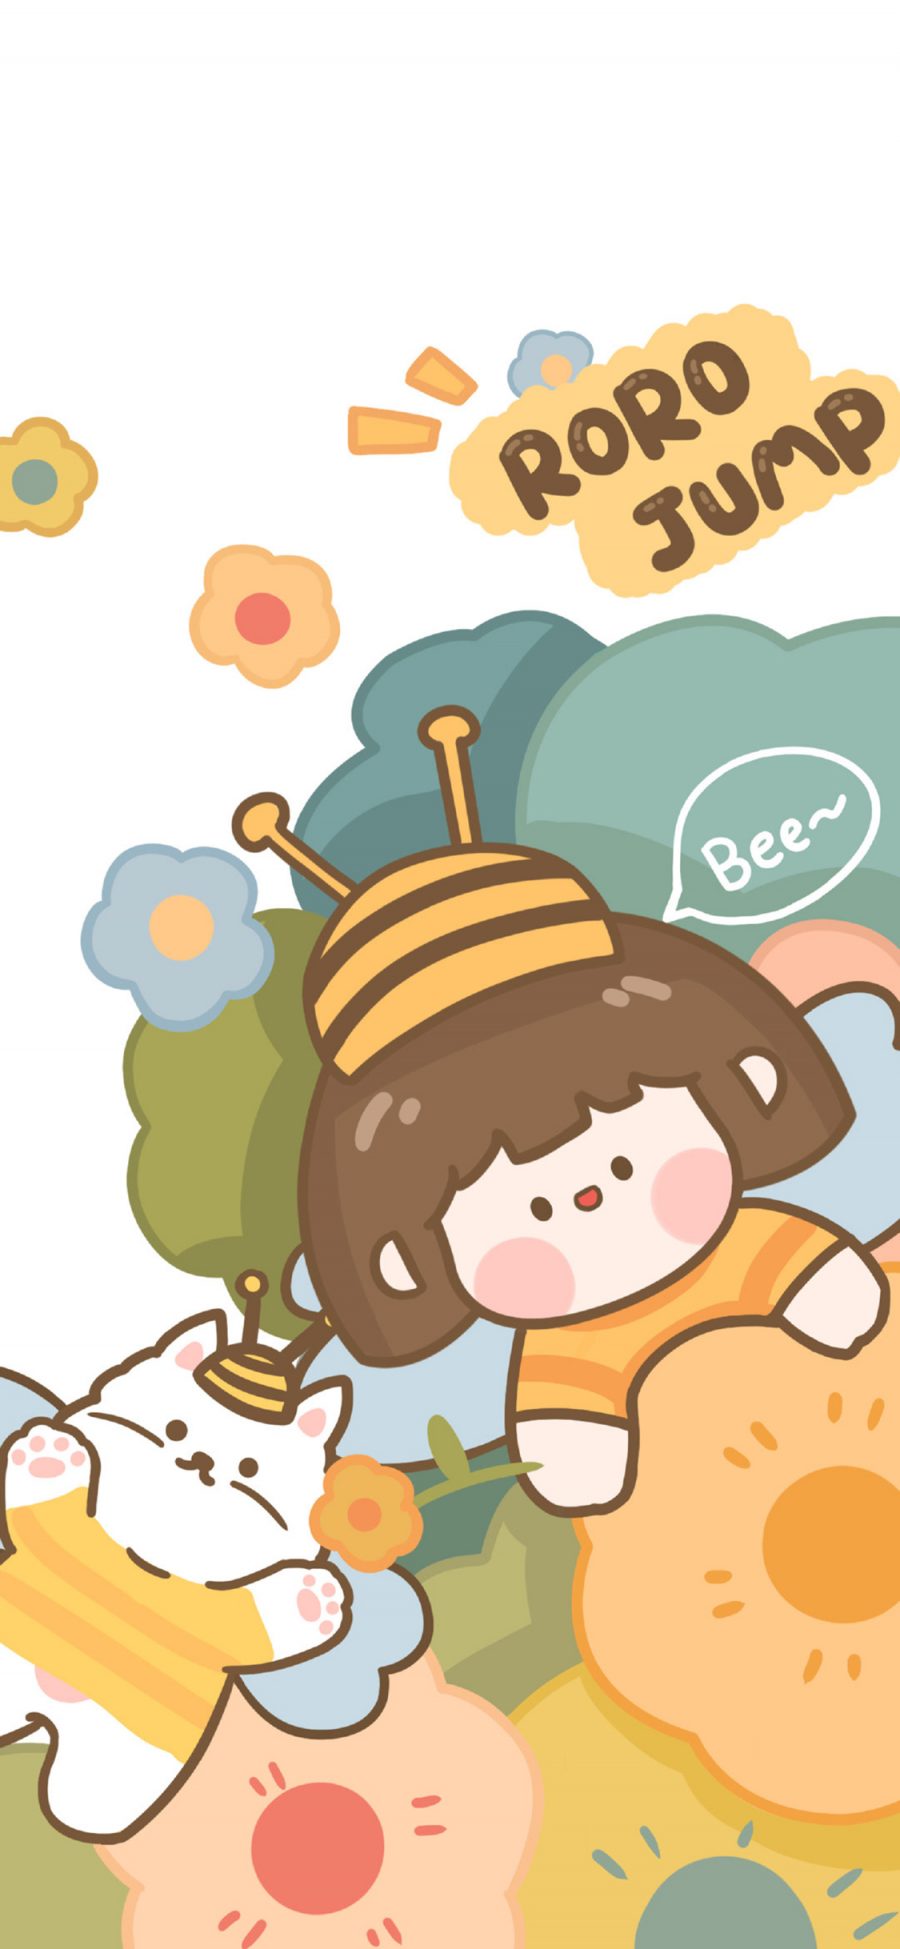 [2436×1125]肉肉酱 蜜蜂 bee 花 小女孩 猫咪 苹果手机动漫壁纸图片